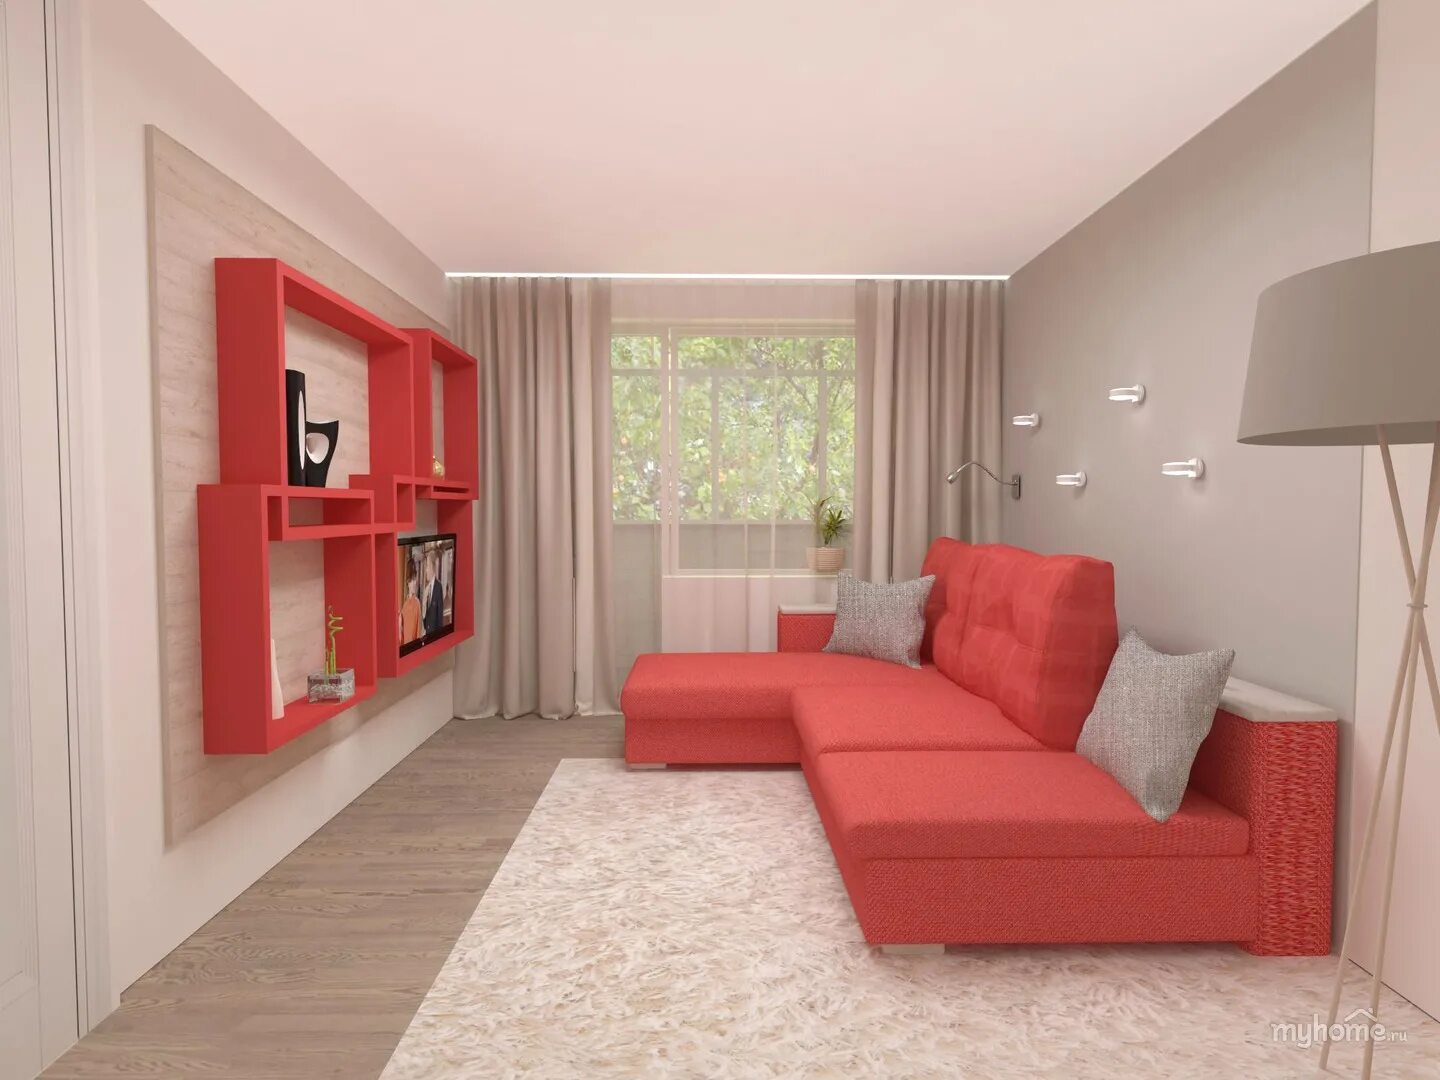 Мебель в комнате 15. Интерьер комнаты с красным диваном. Интерьер однокомнатной квартиры в Красном. Интерьер комнаты в однокомнатной квартире. Красный диван в интерьере маленькой комнаты.